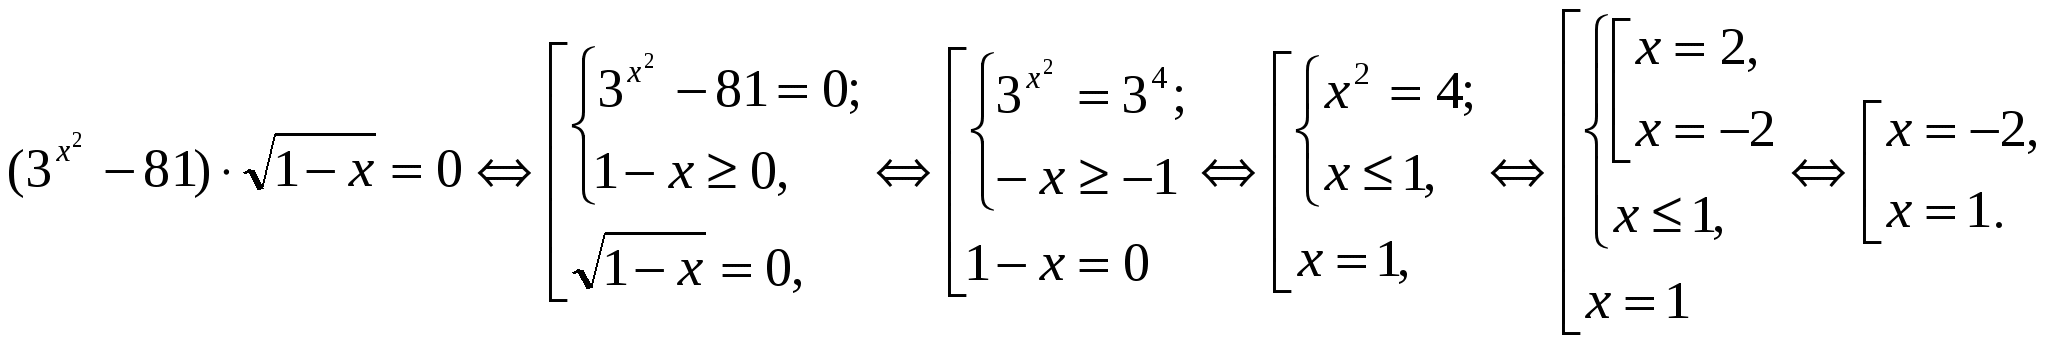 Конспект по алгебре для 11 класса «Решение показательных уравнений»